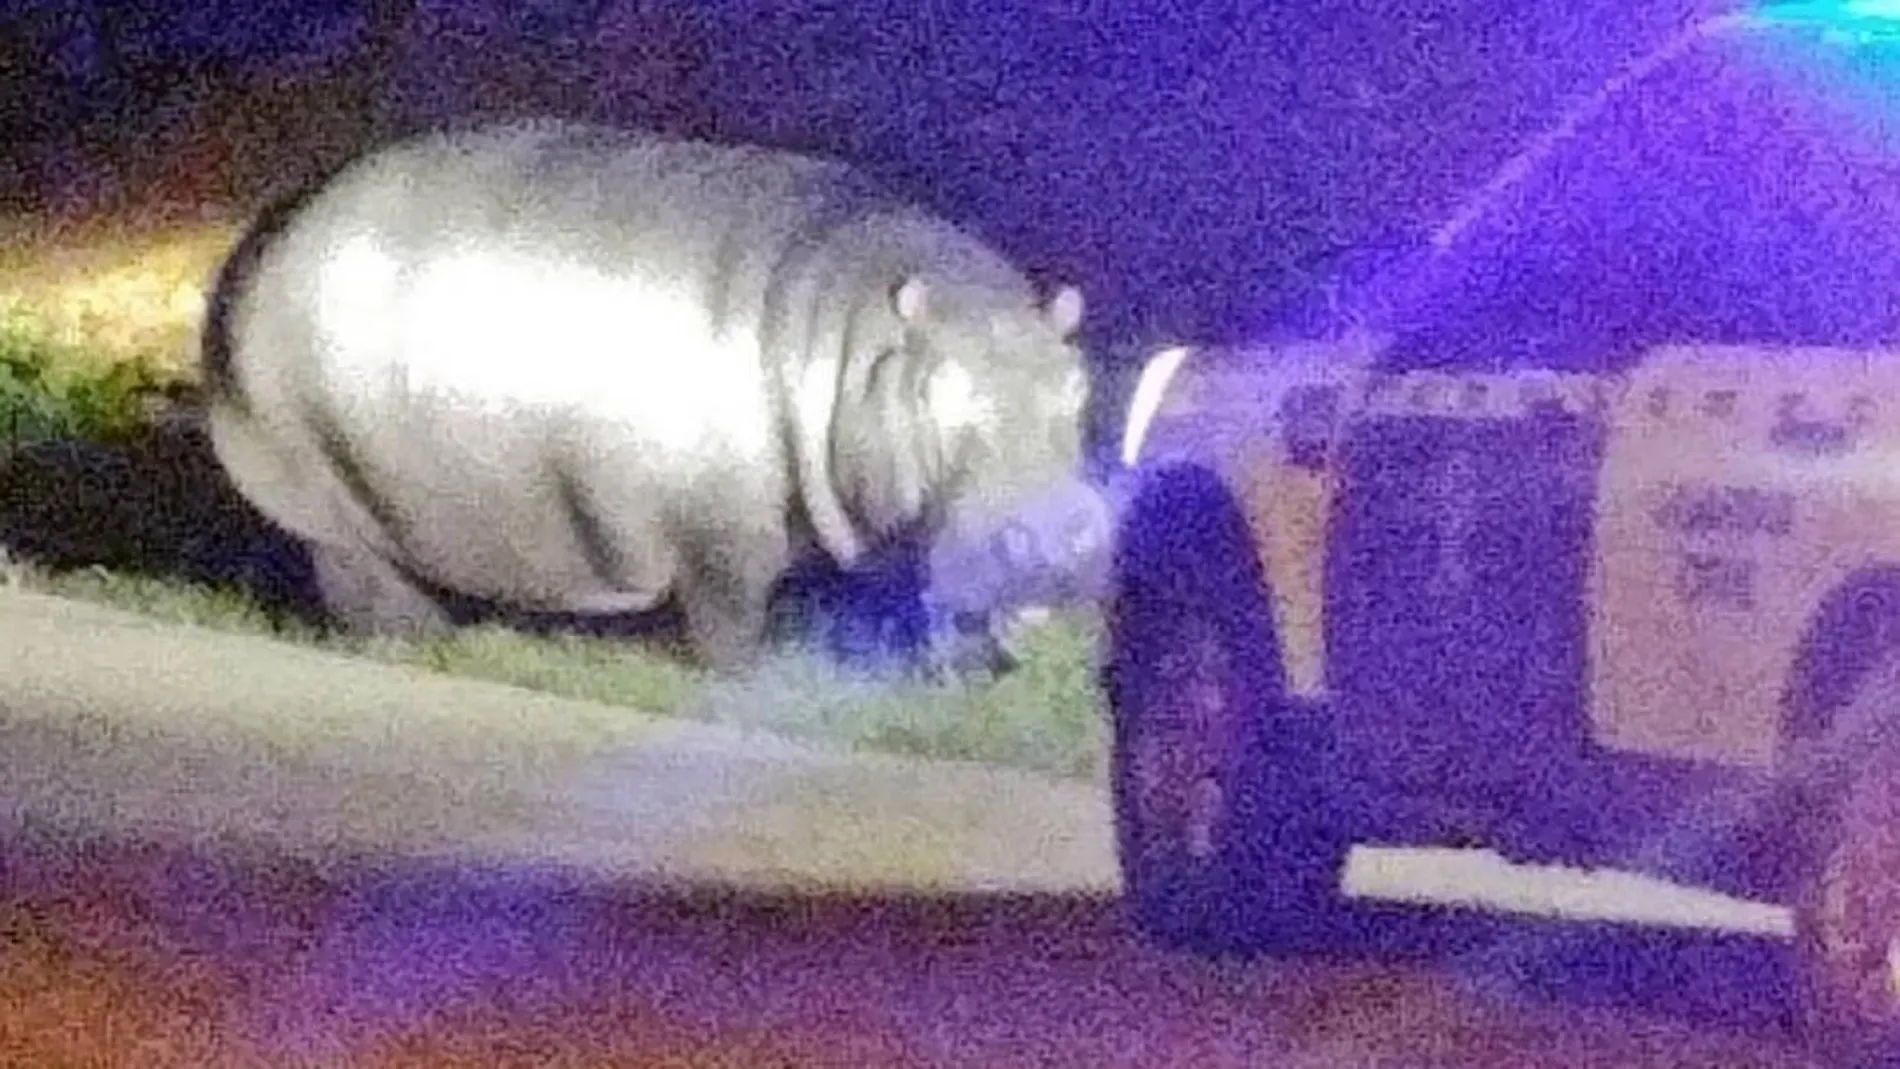 El hipopótamo pasea por La Garrovilla (Badajoz) en presencia de la Guardia Civil